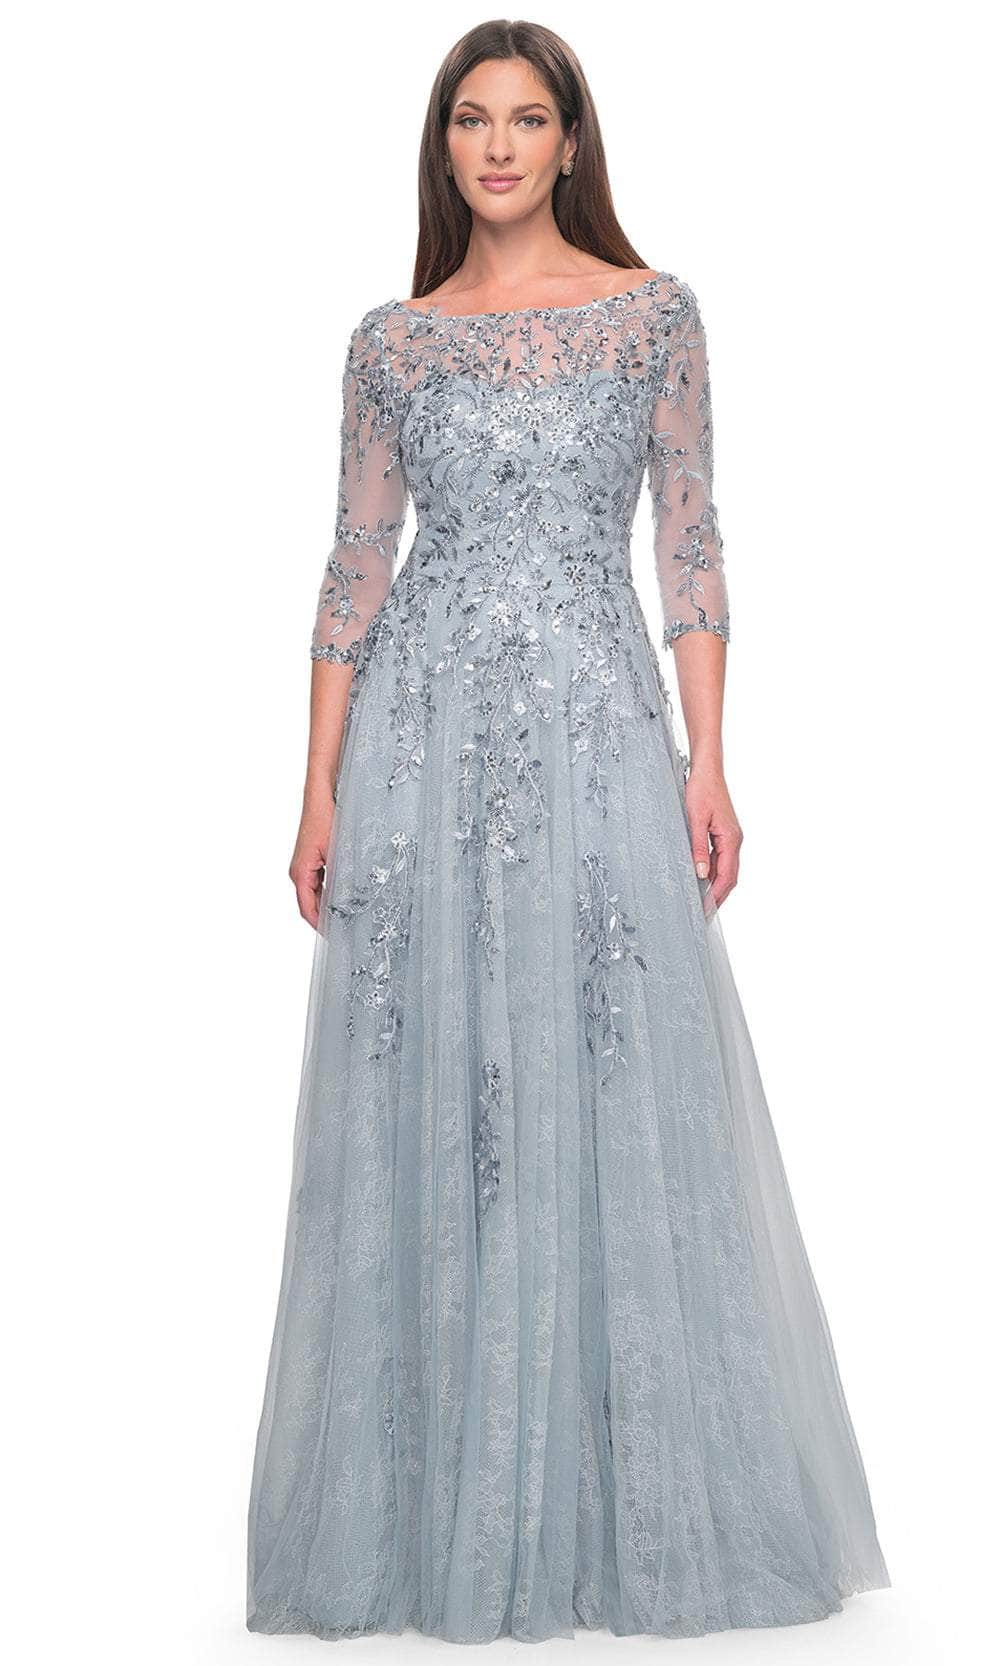 Image of La Femme 31795 - Embellished A-Line Evening Dress